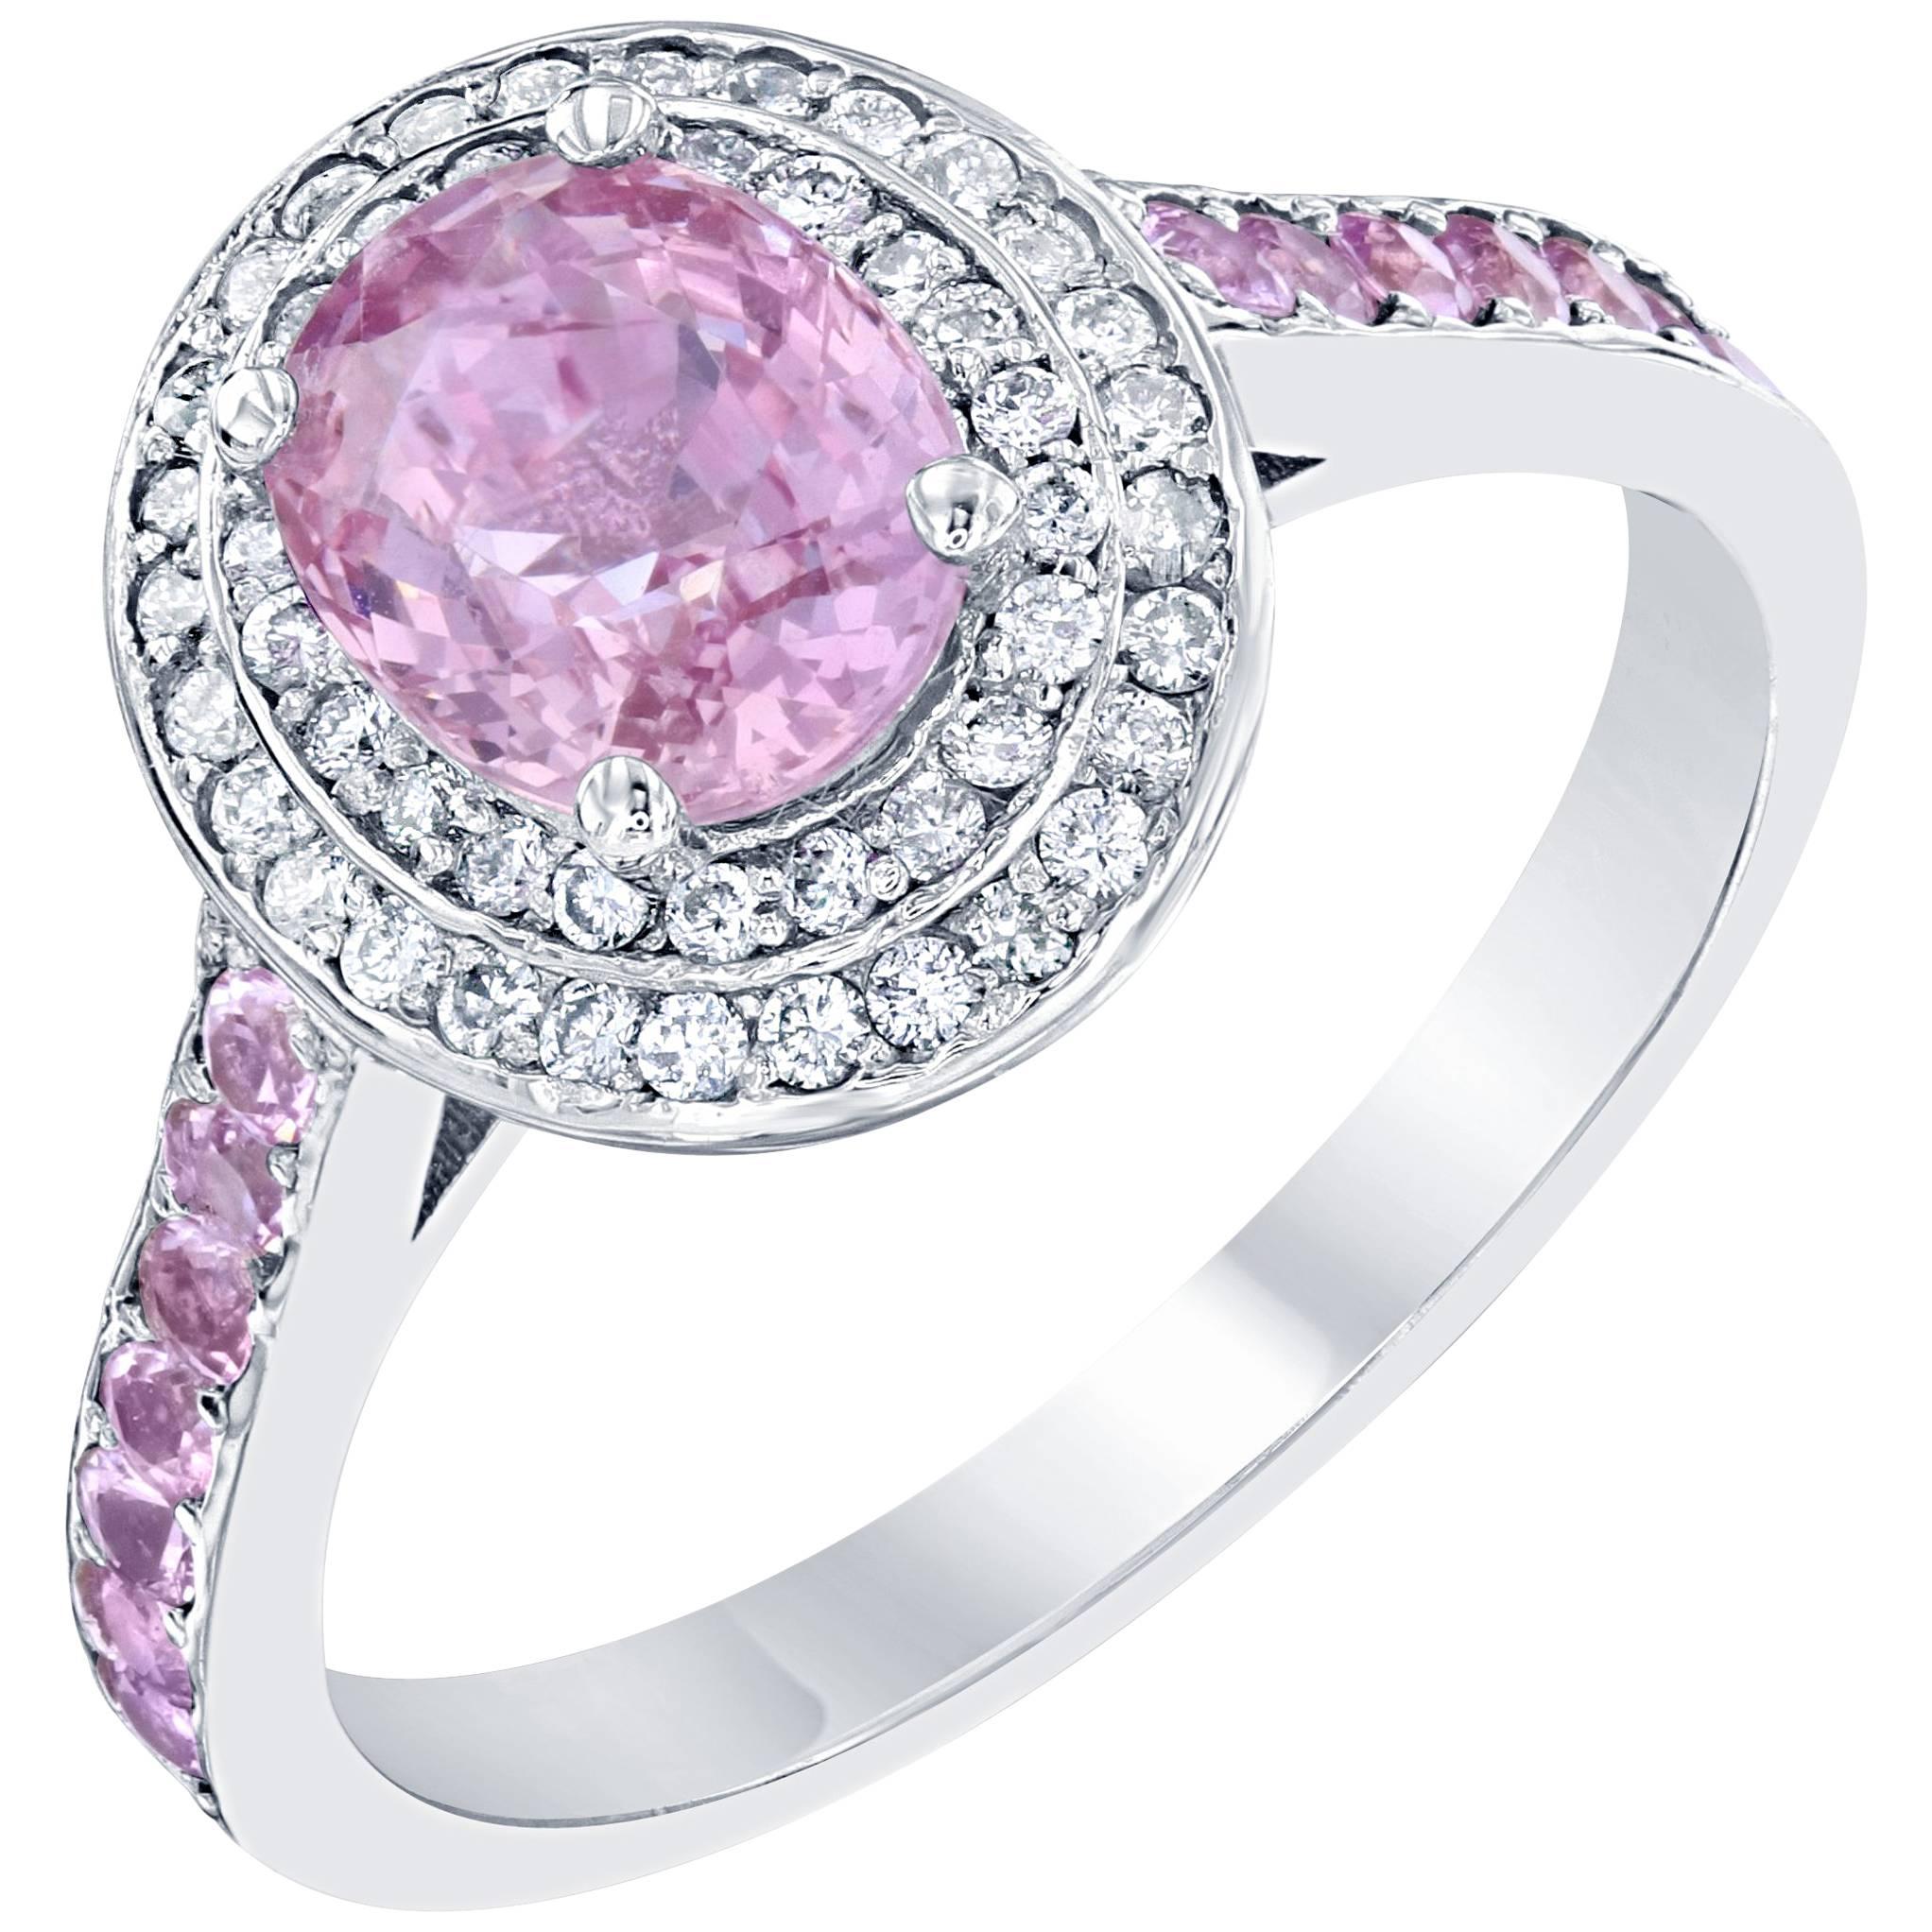 2.20 Carat Pink Sapphire Diamond 18 Karat White Gold Ring